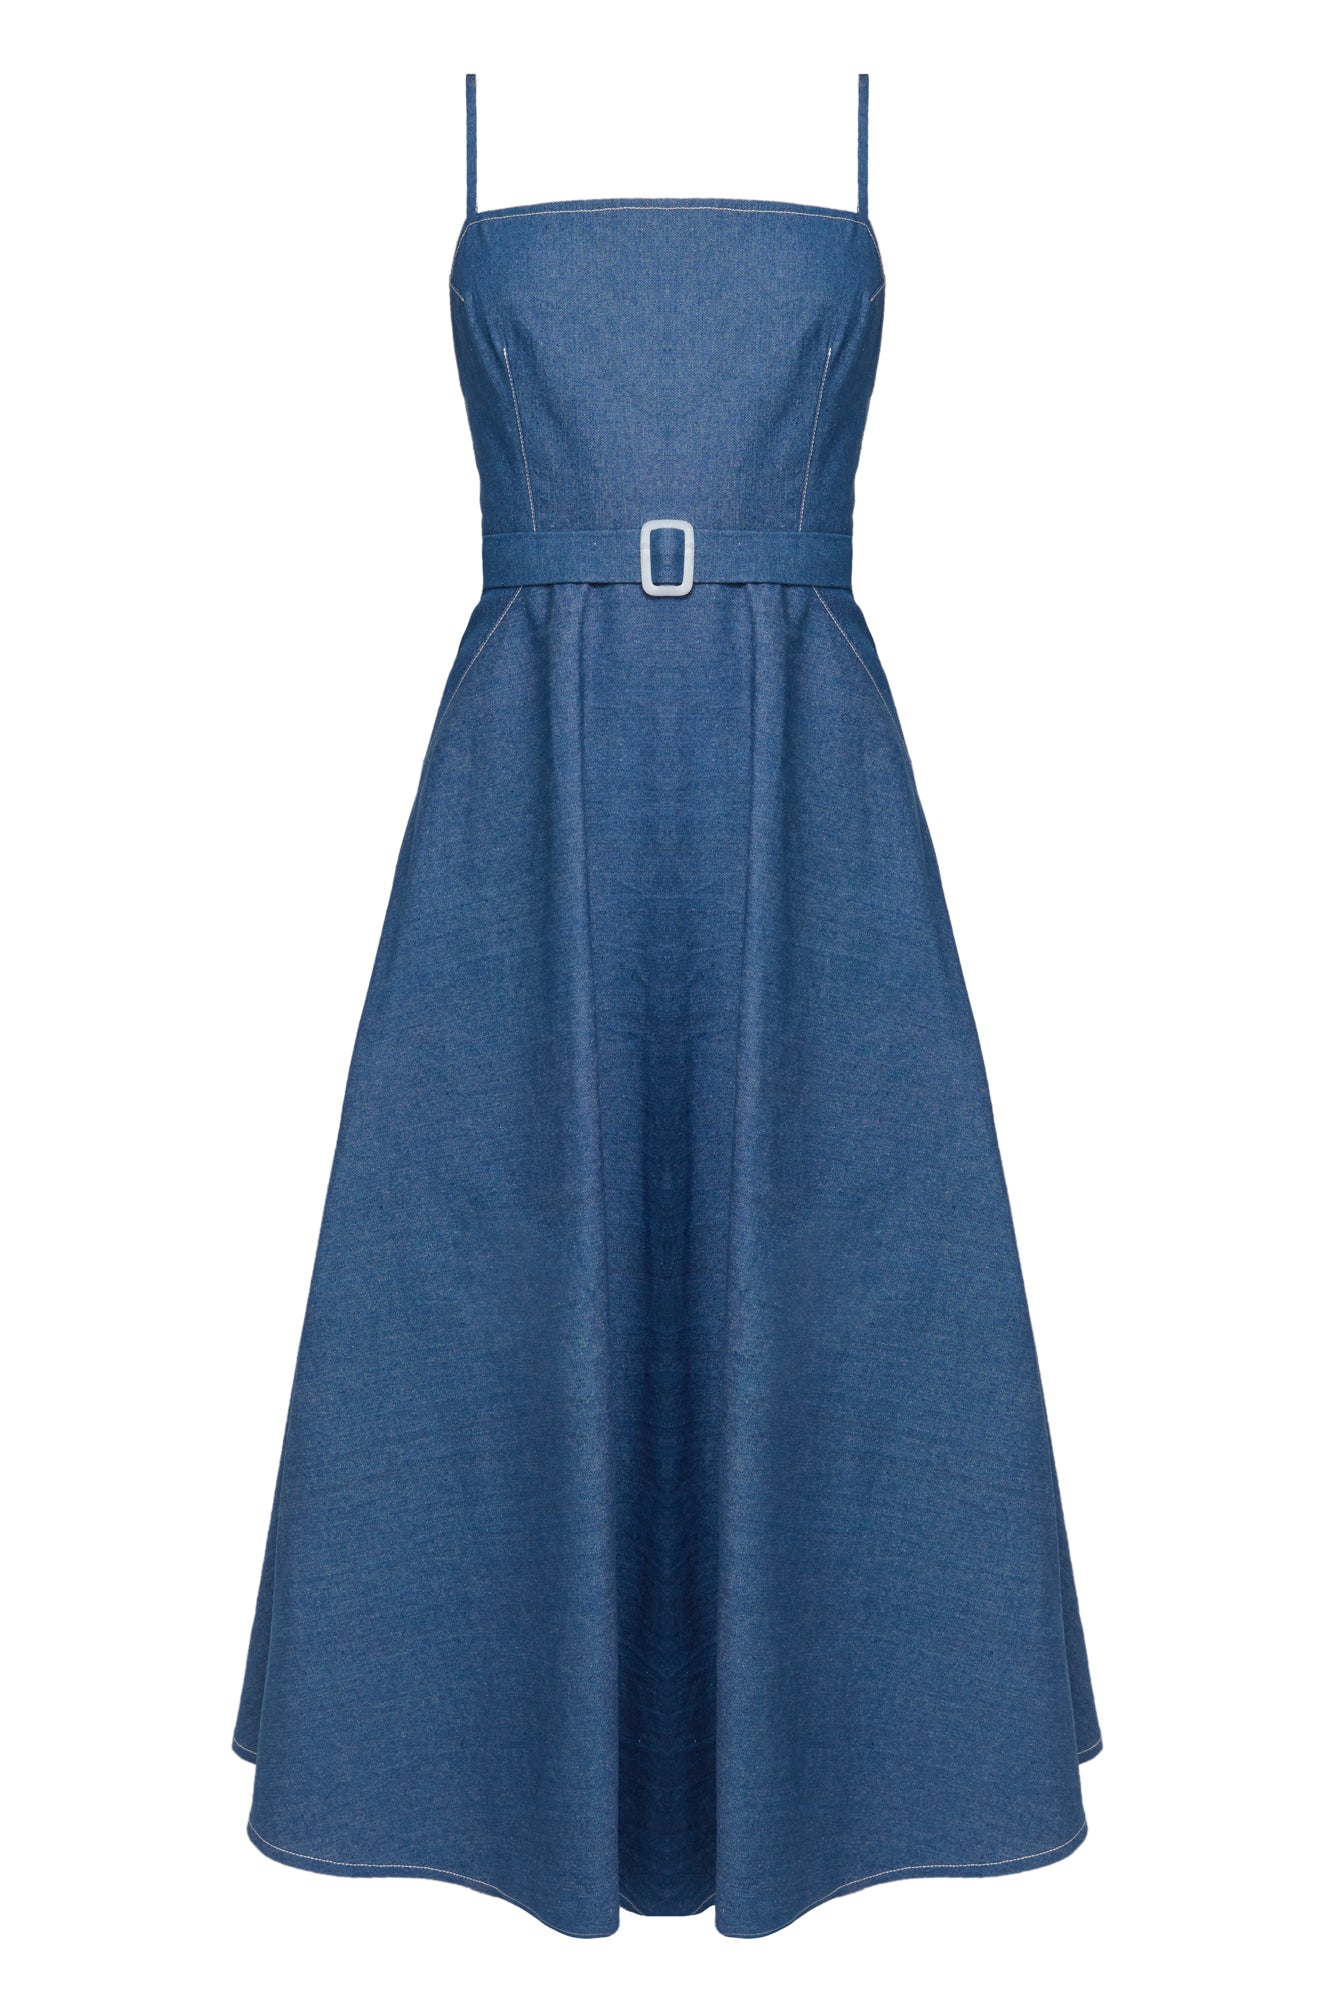 MATISSA Blue Denim Dress - Vintage-inspired Fashion